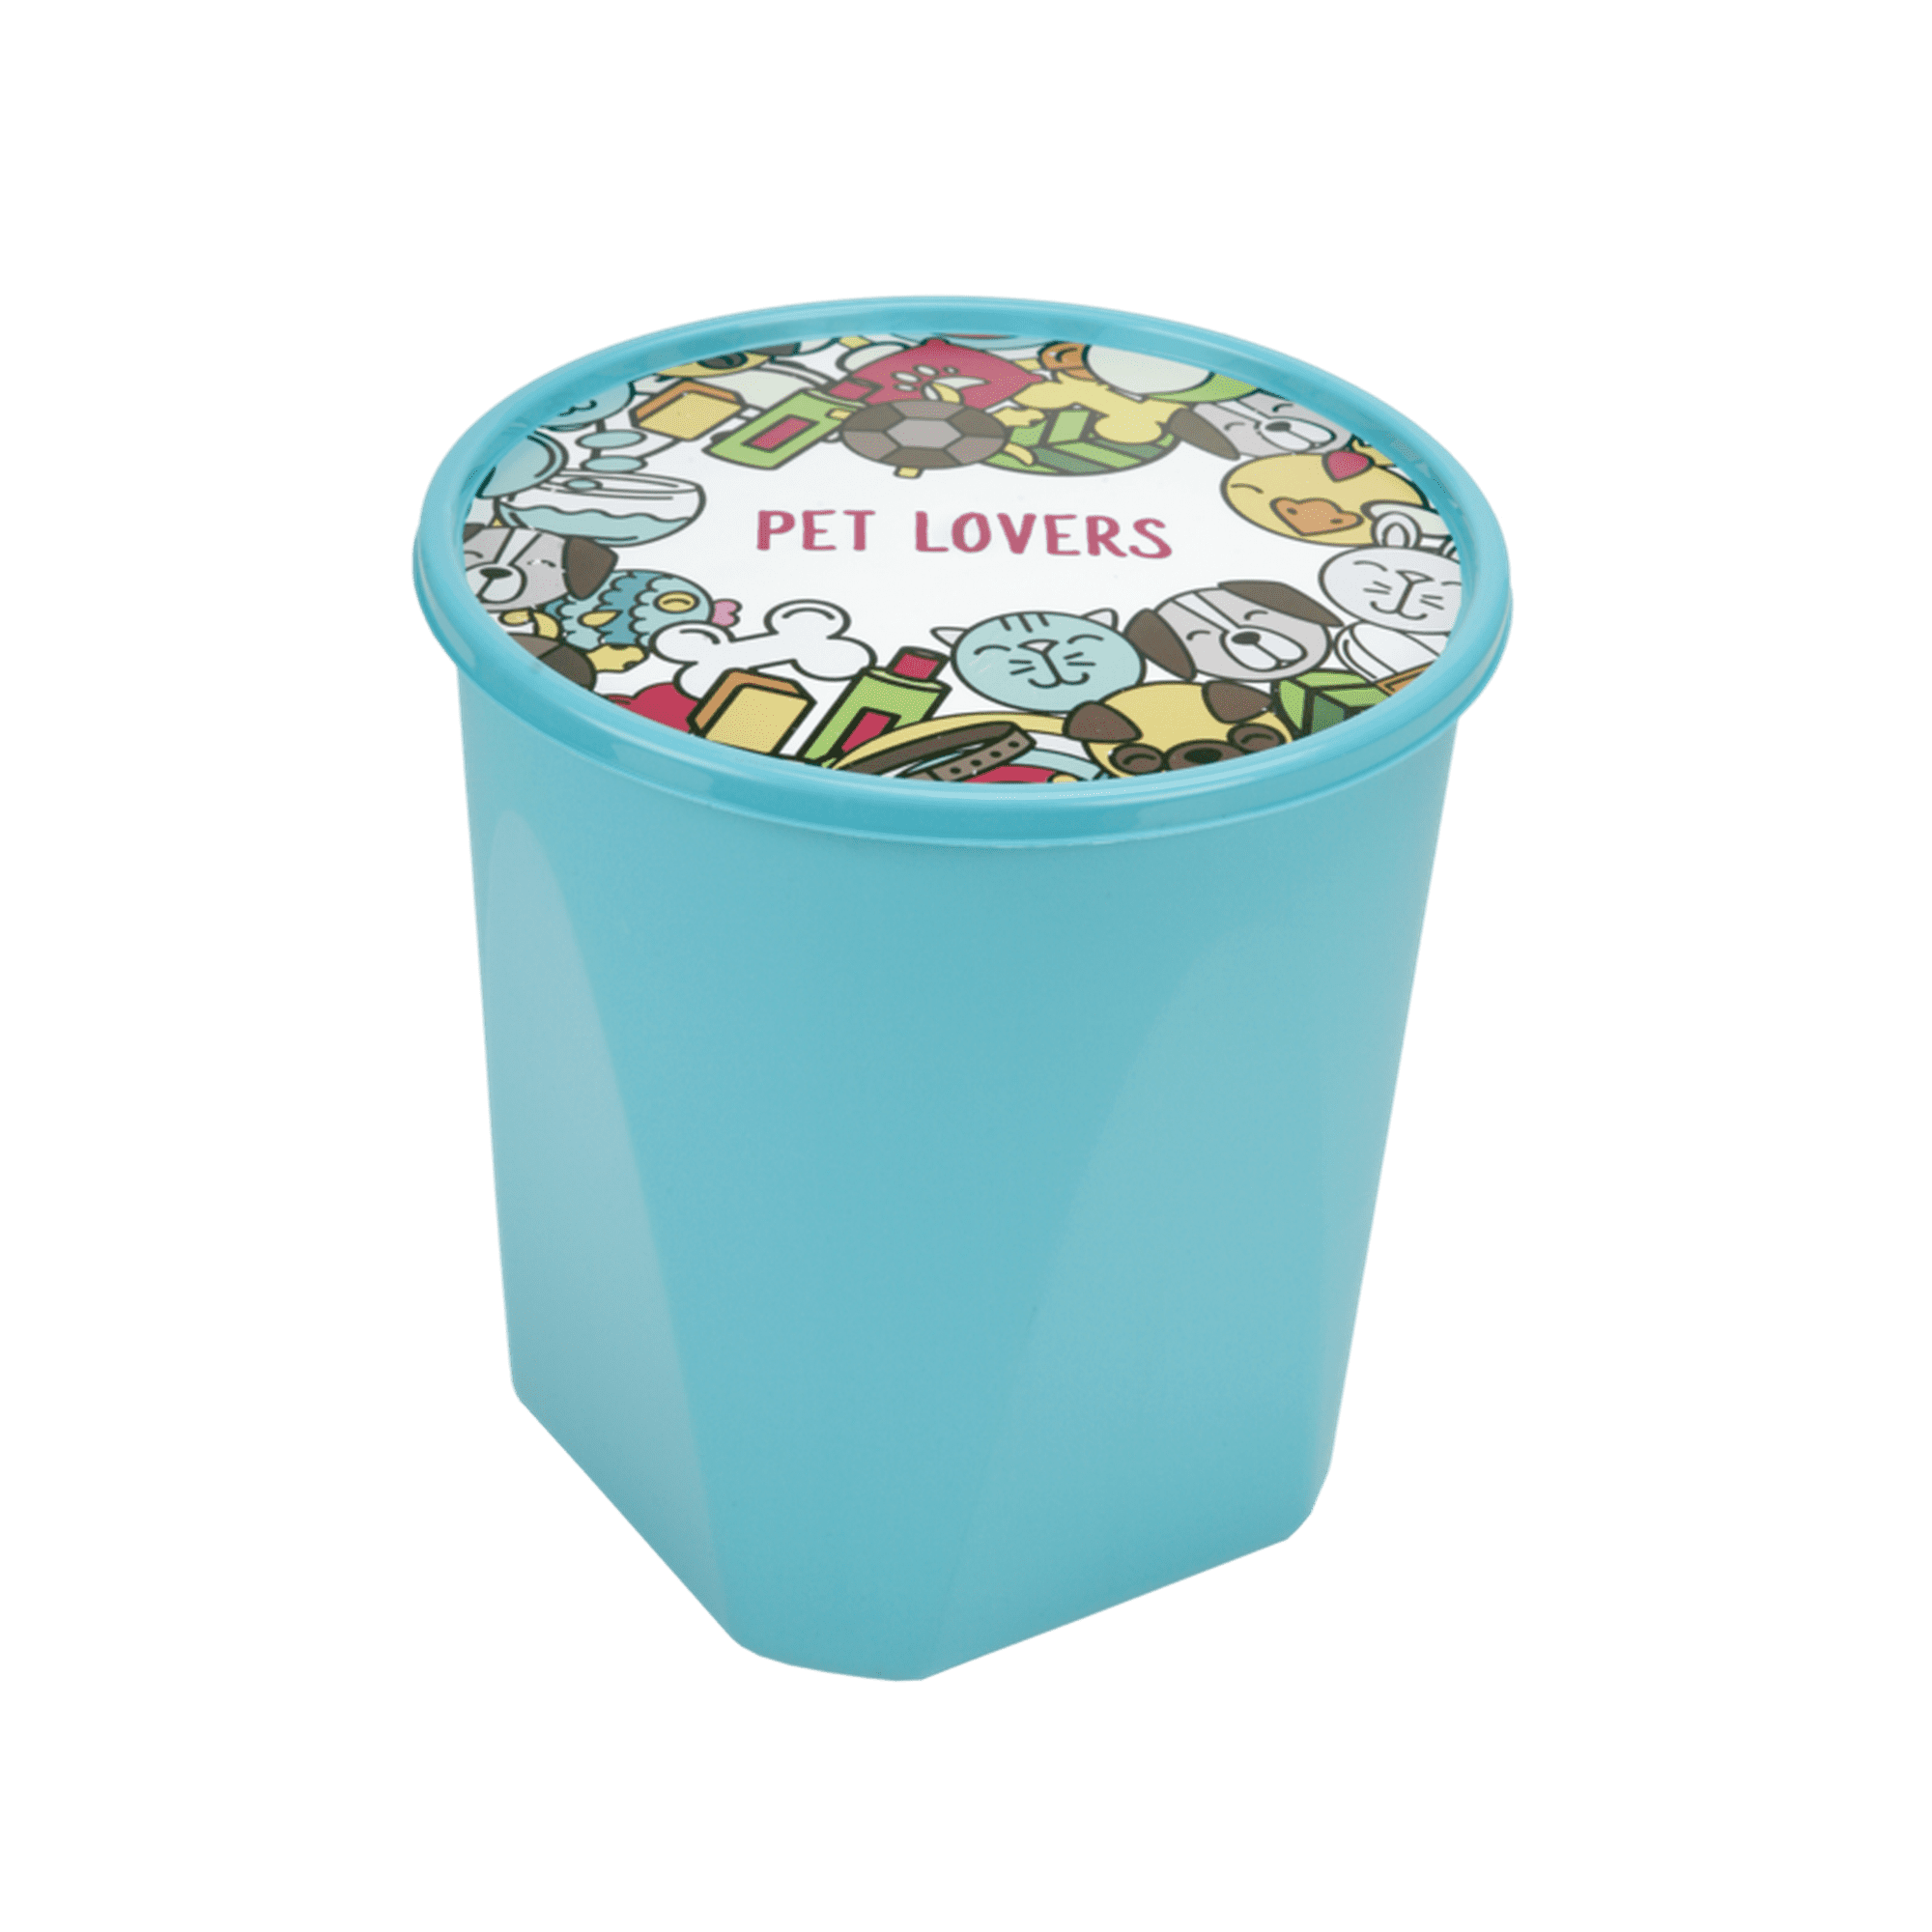 Juego de 3 Contenedores recipientes para alimento con tapa en Plástico  libre de BPA Jaguar Plásticos Articulo de Cocina